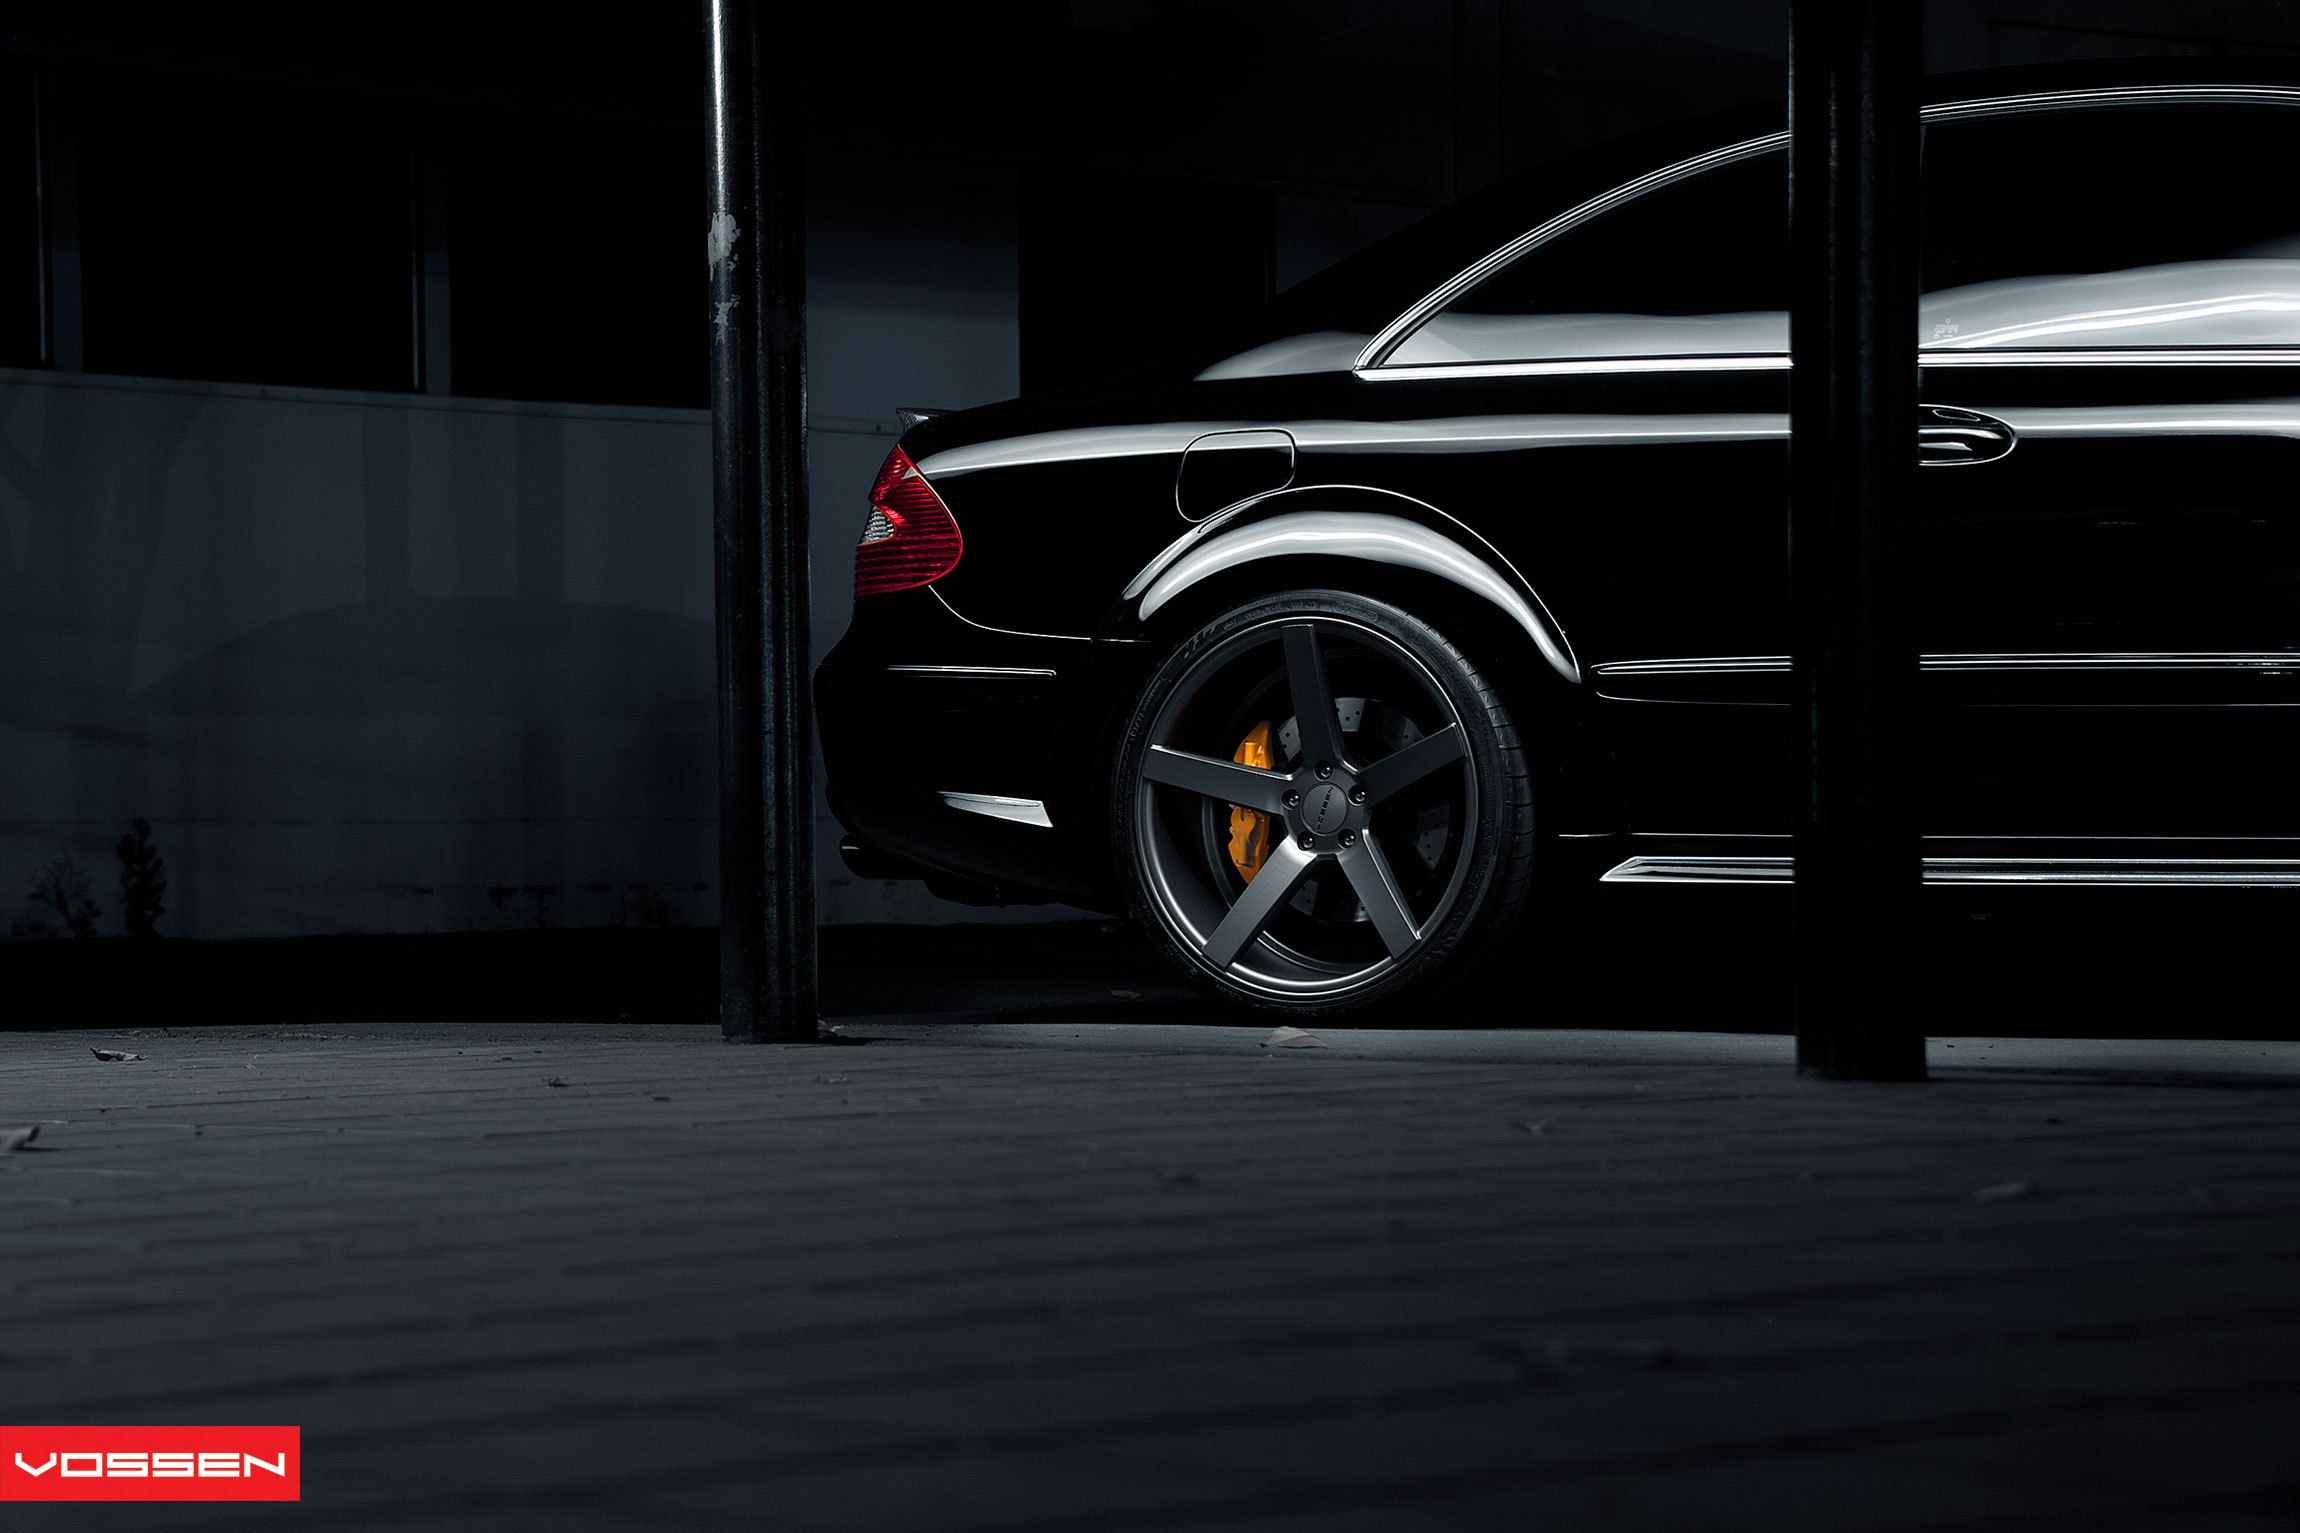 Vossen Wheels with Yellow Brakes on Black Mercedes CLK - Photo by Vossen